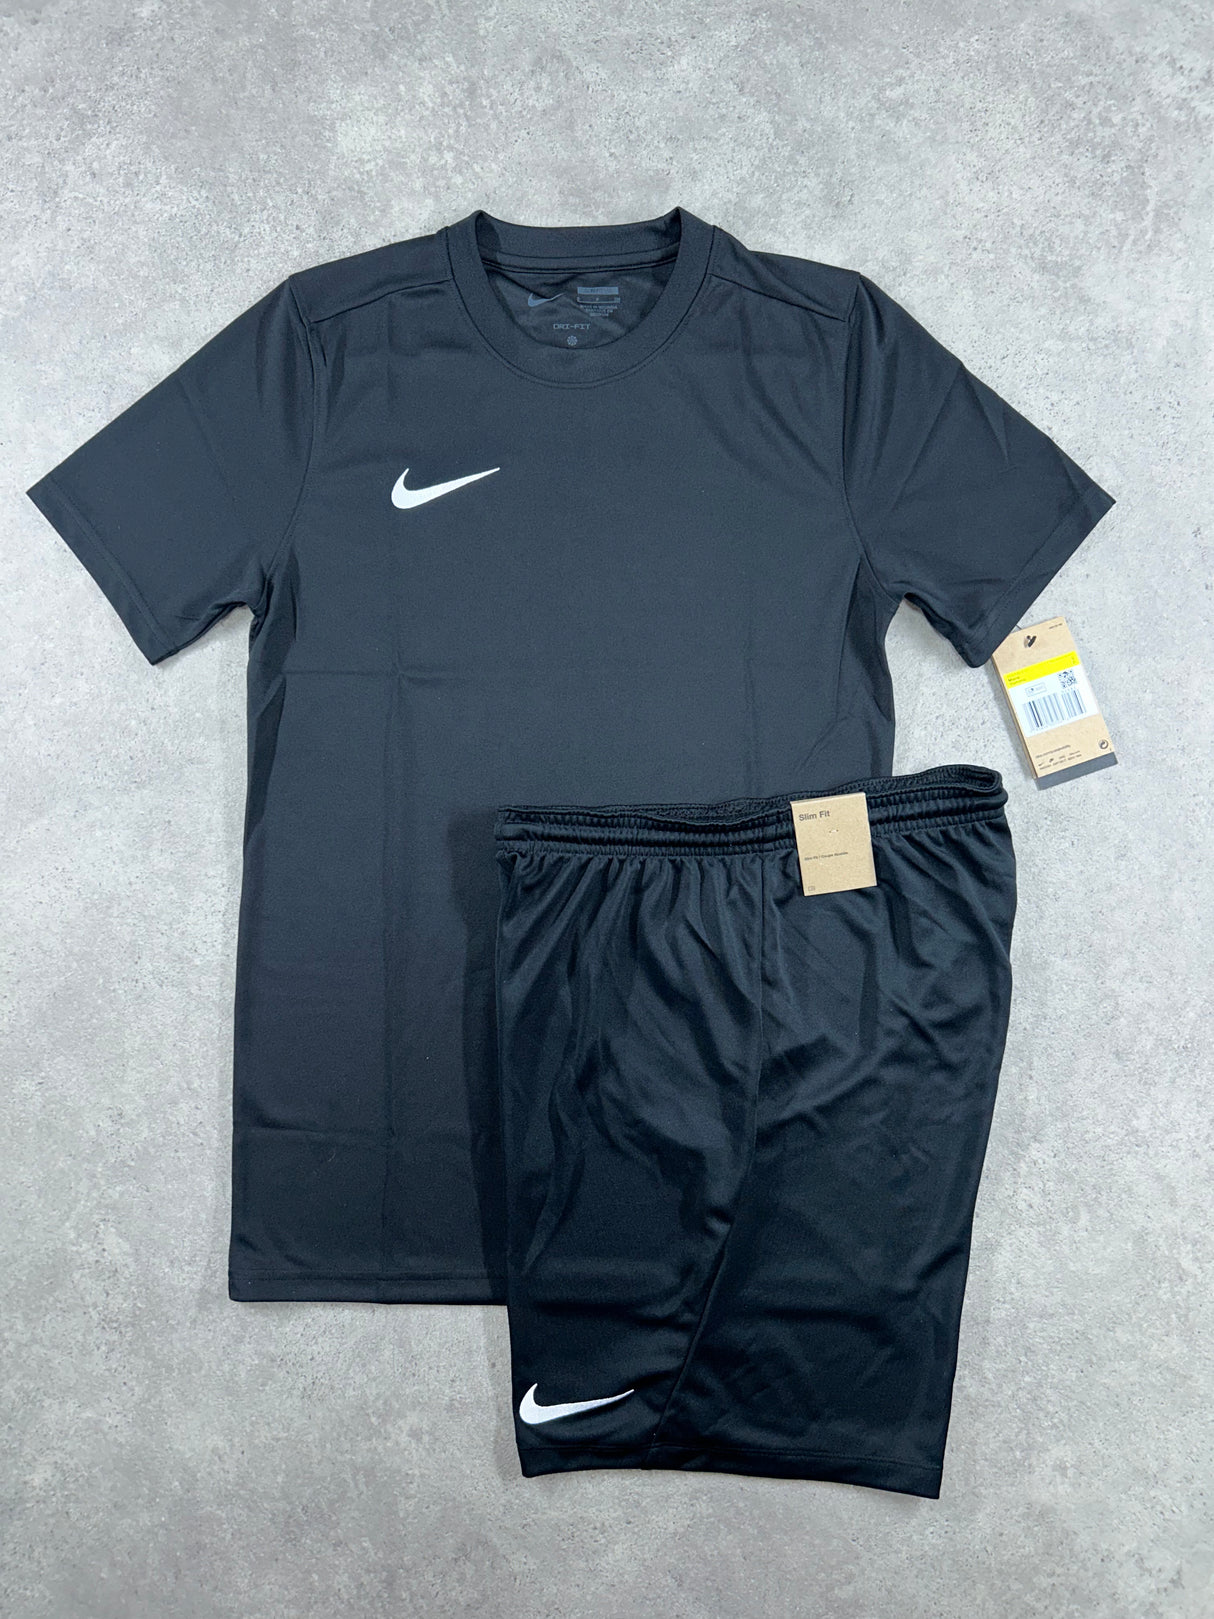 Nike - Dri Fit Set - Black – DRIP SUPPLY UK